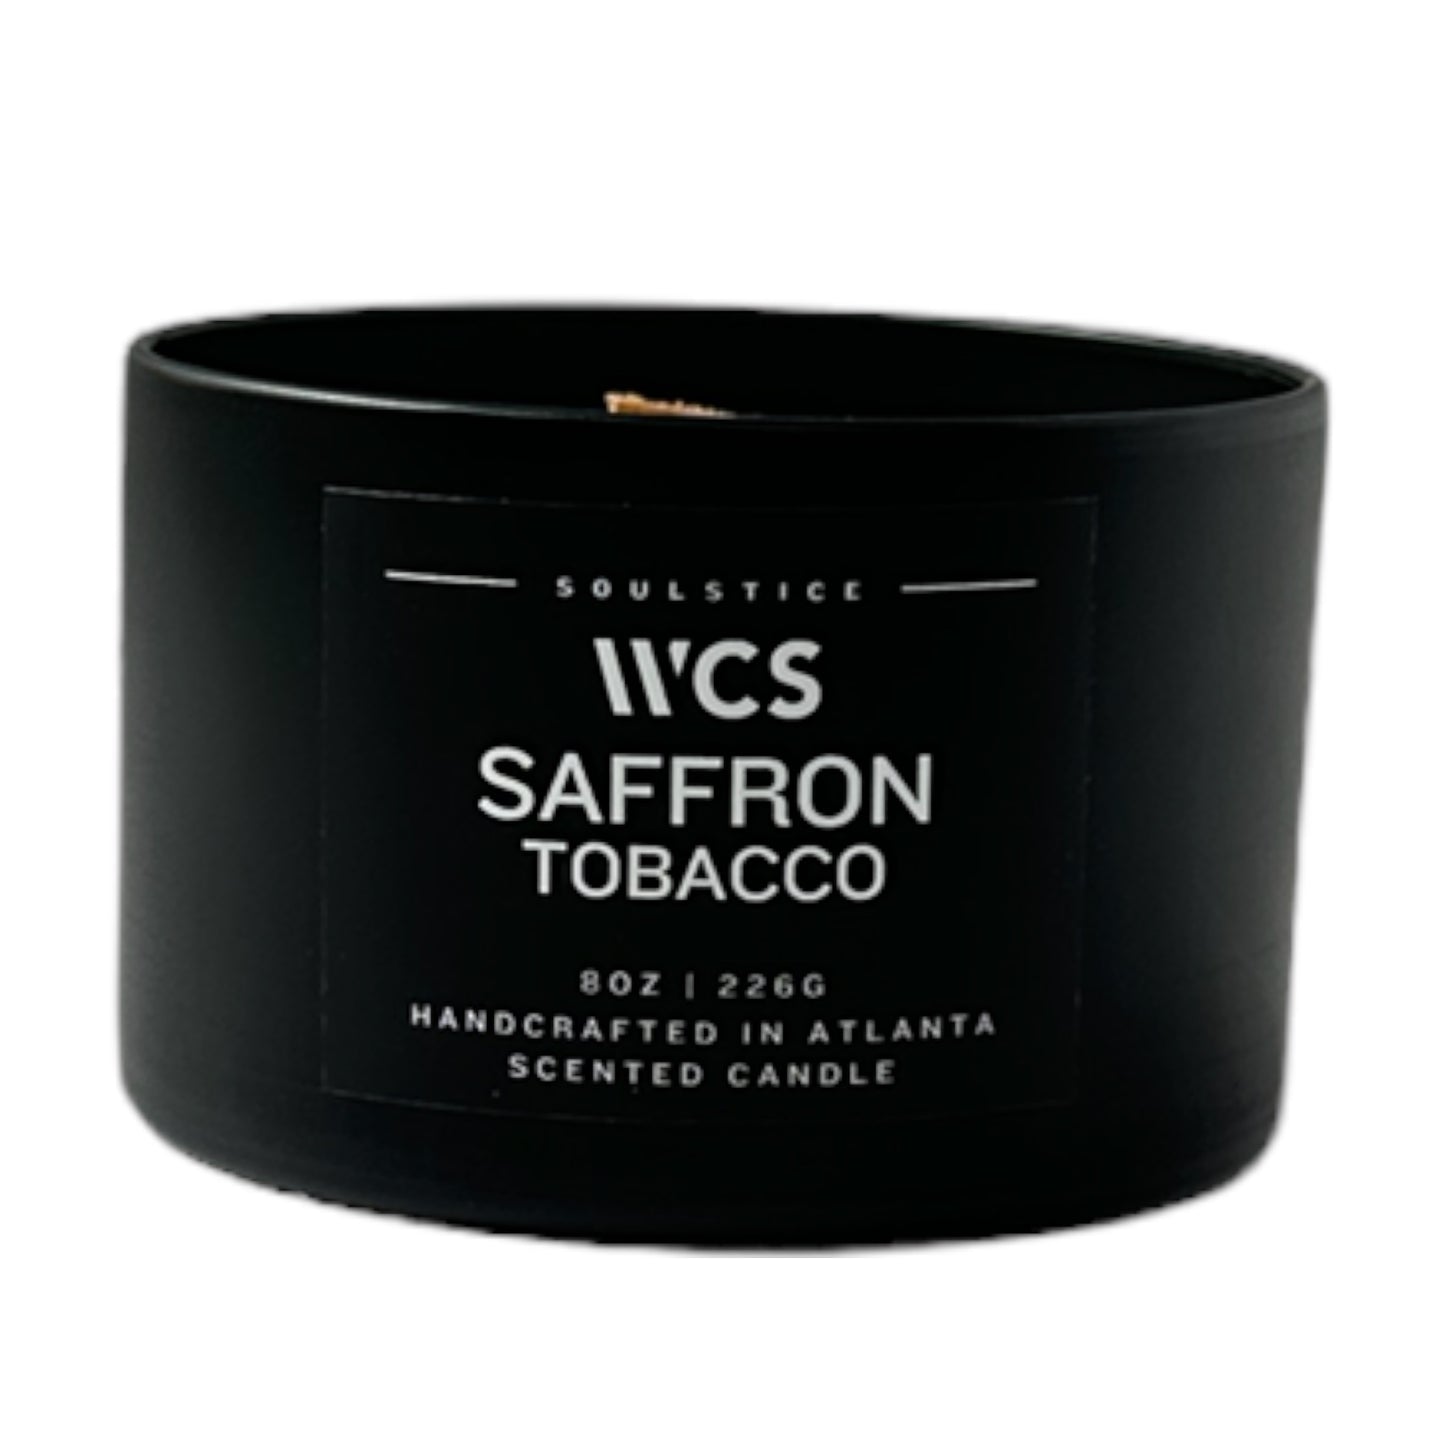 Saffron Tobacco